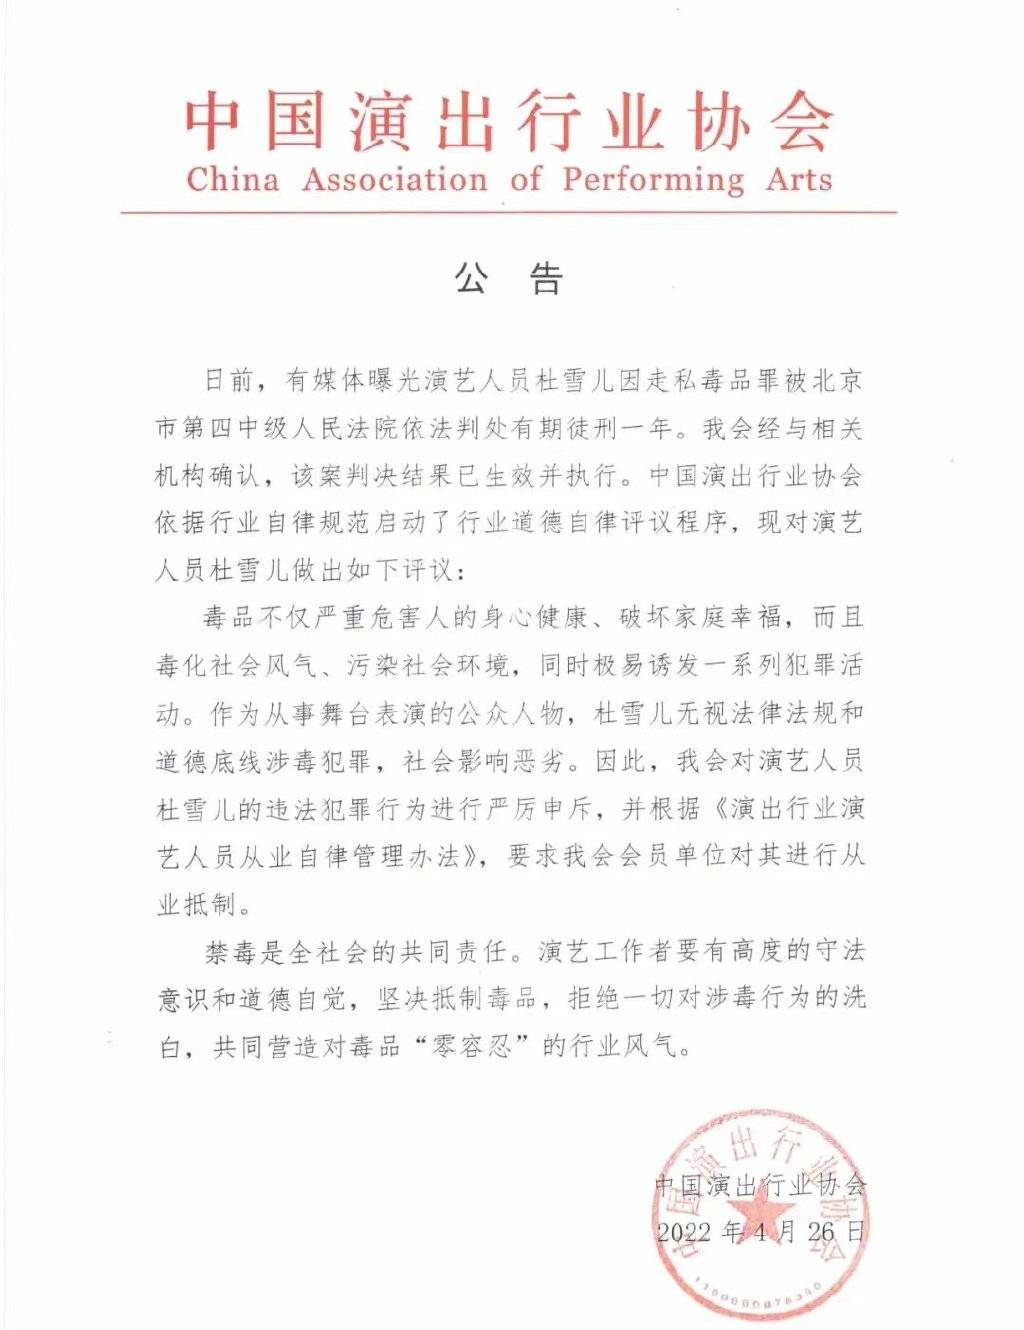 中国演出行业协会发布对杜雪儿进行从业抵制的公告